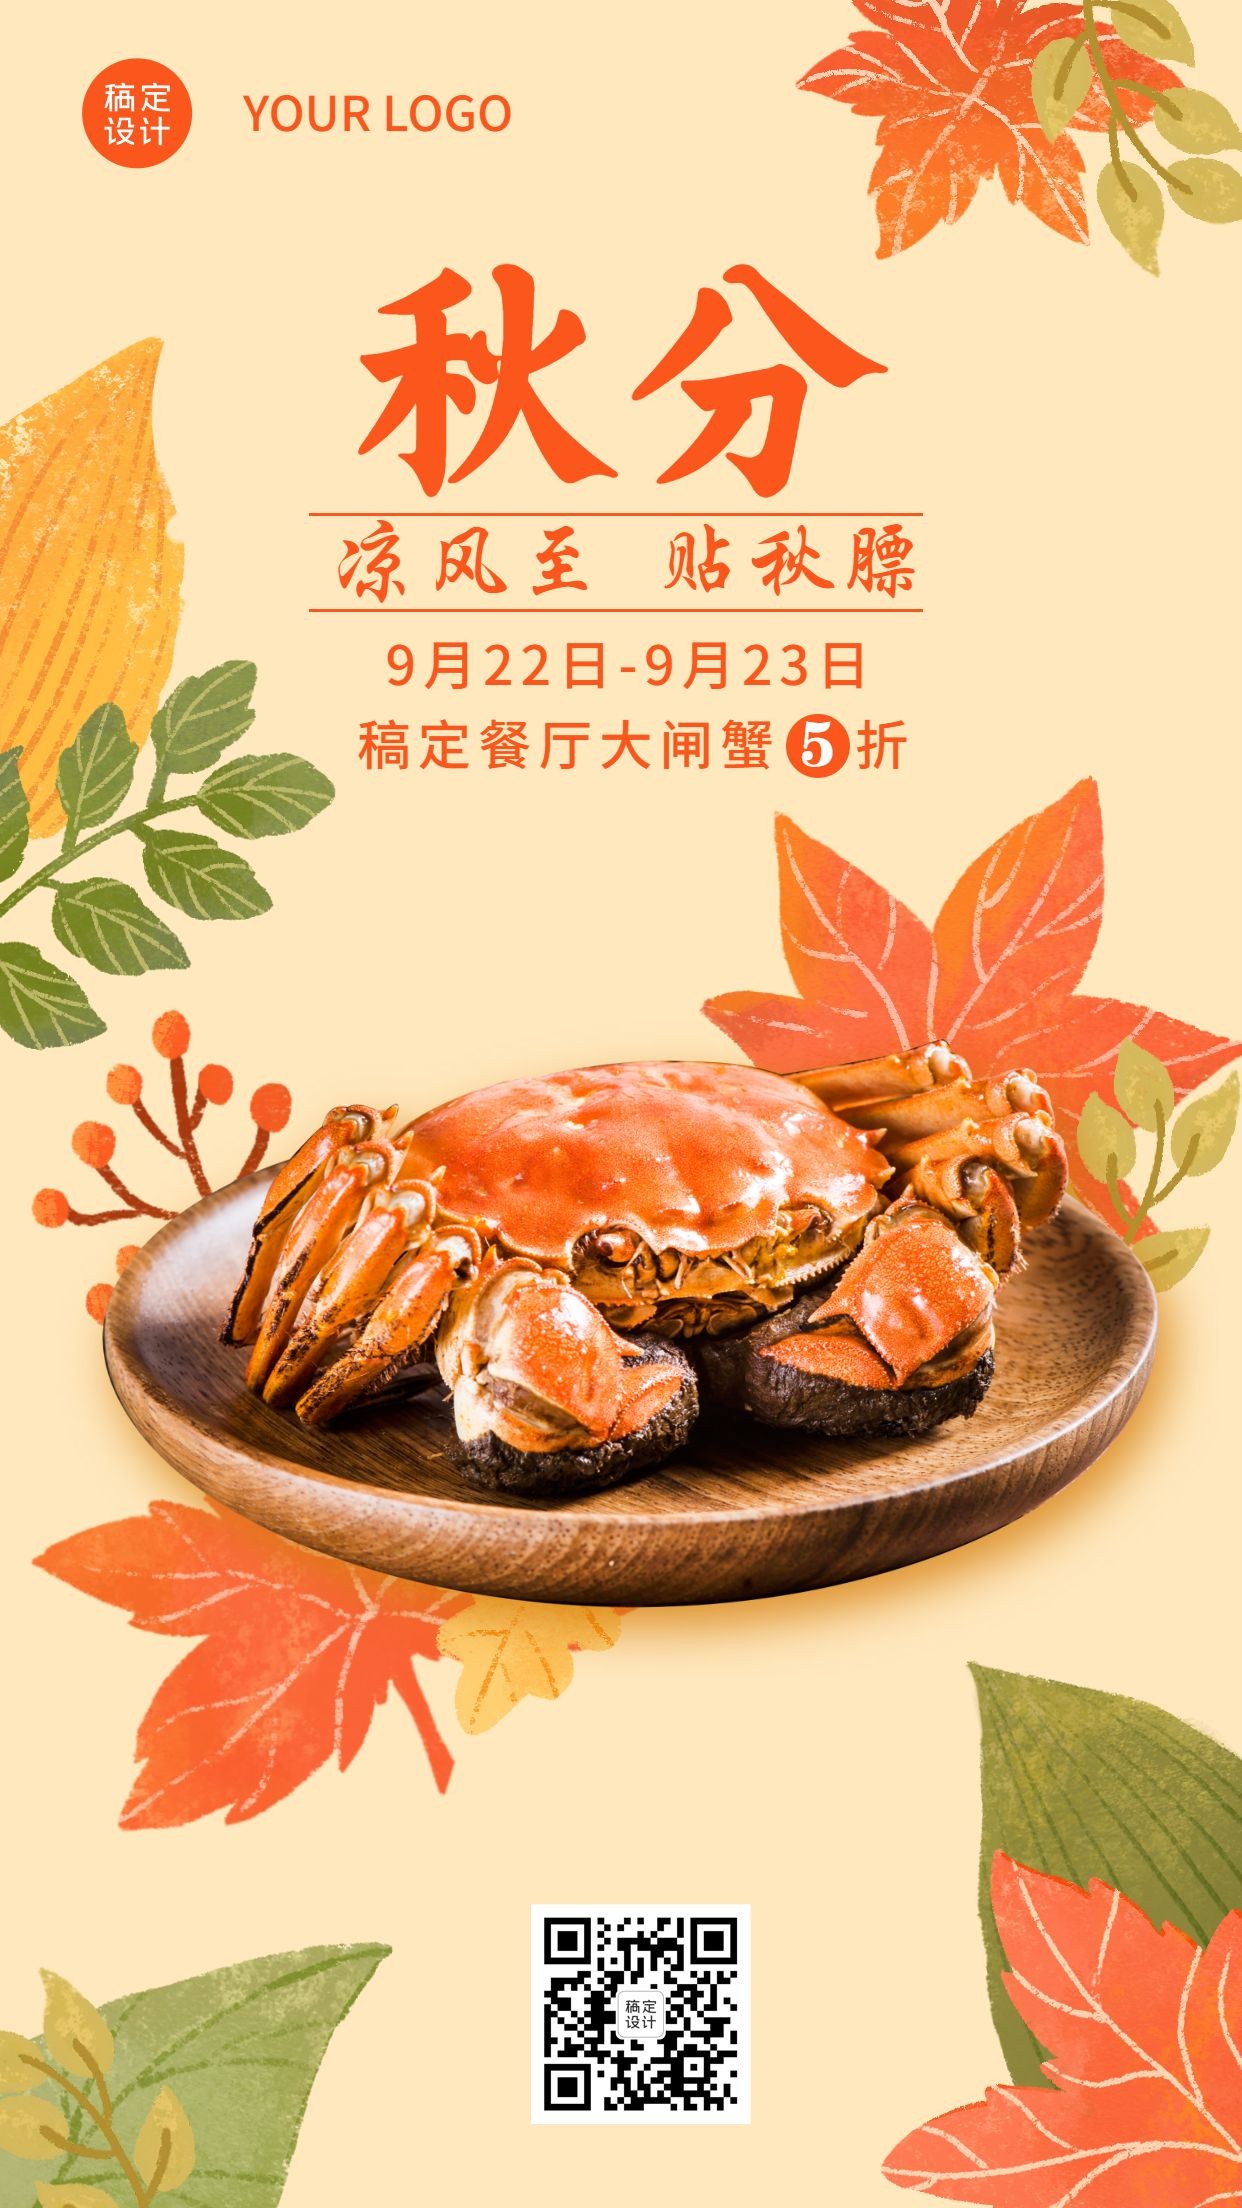 海鲜餐厅秋分打折活动手绘手机海报